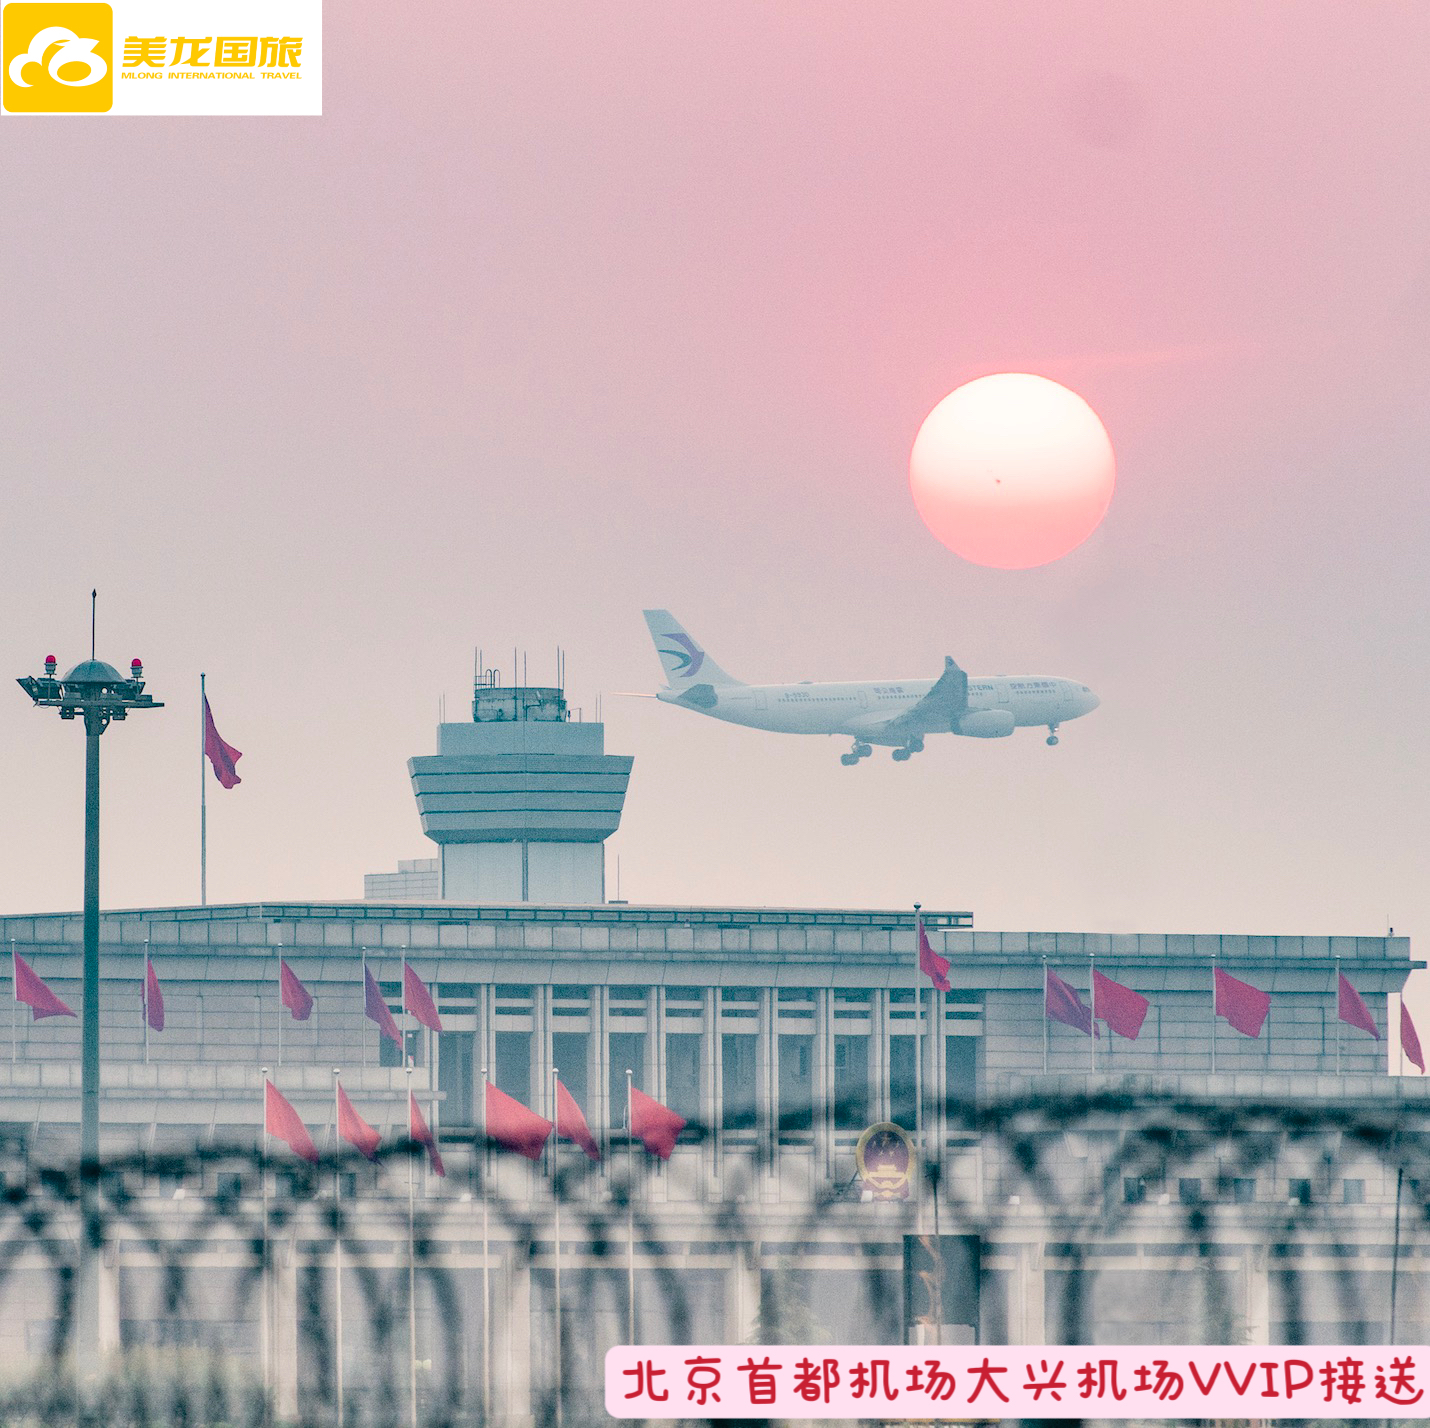 北京首都国际机场大兴机场VIP机场通道贵宾休息室快速安检边检